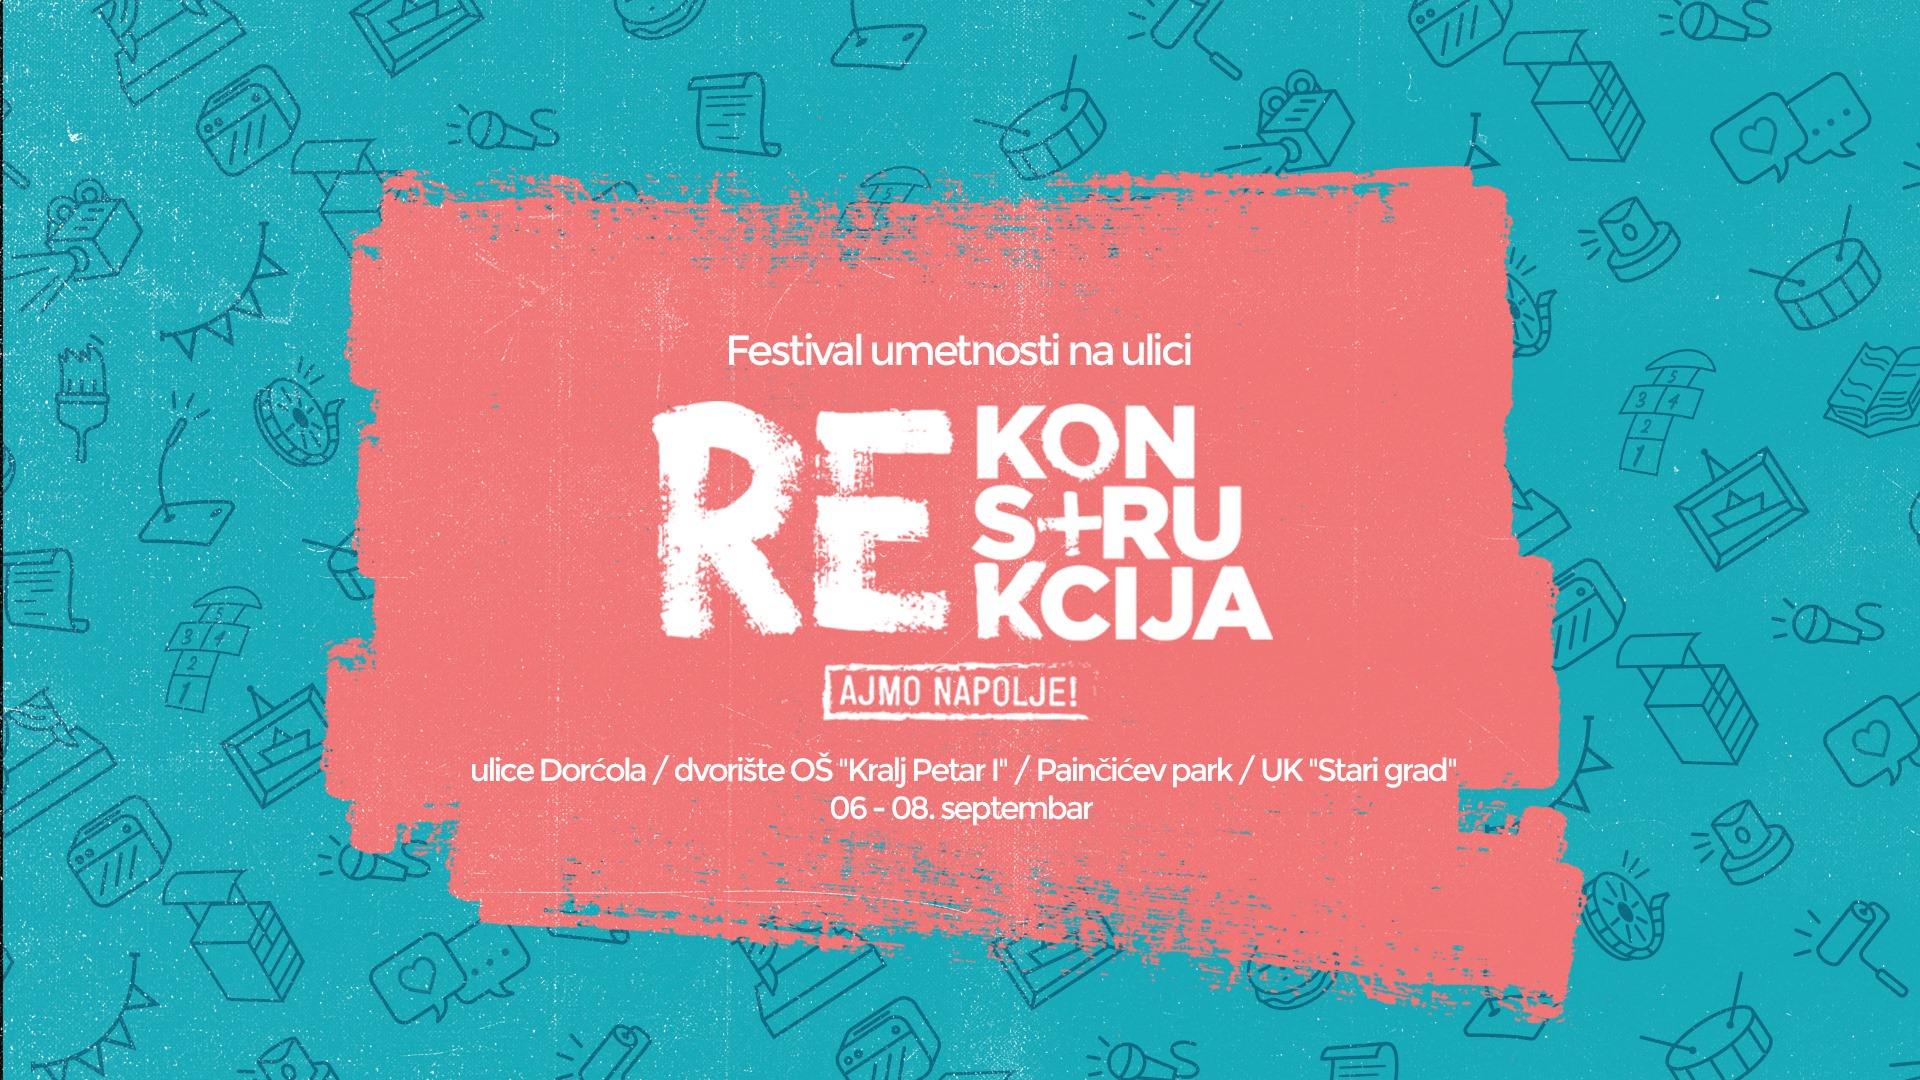 Festival Rekonstrukcija 06 – 08.09.2019 II Ajmo napolje!